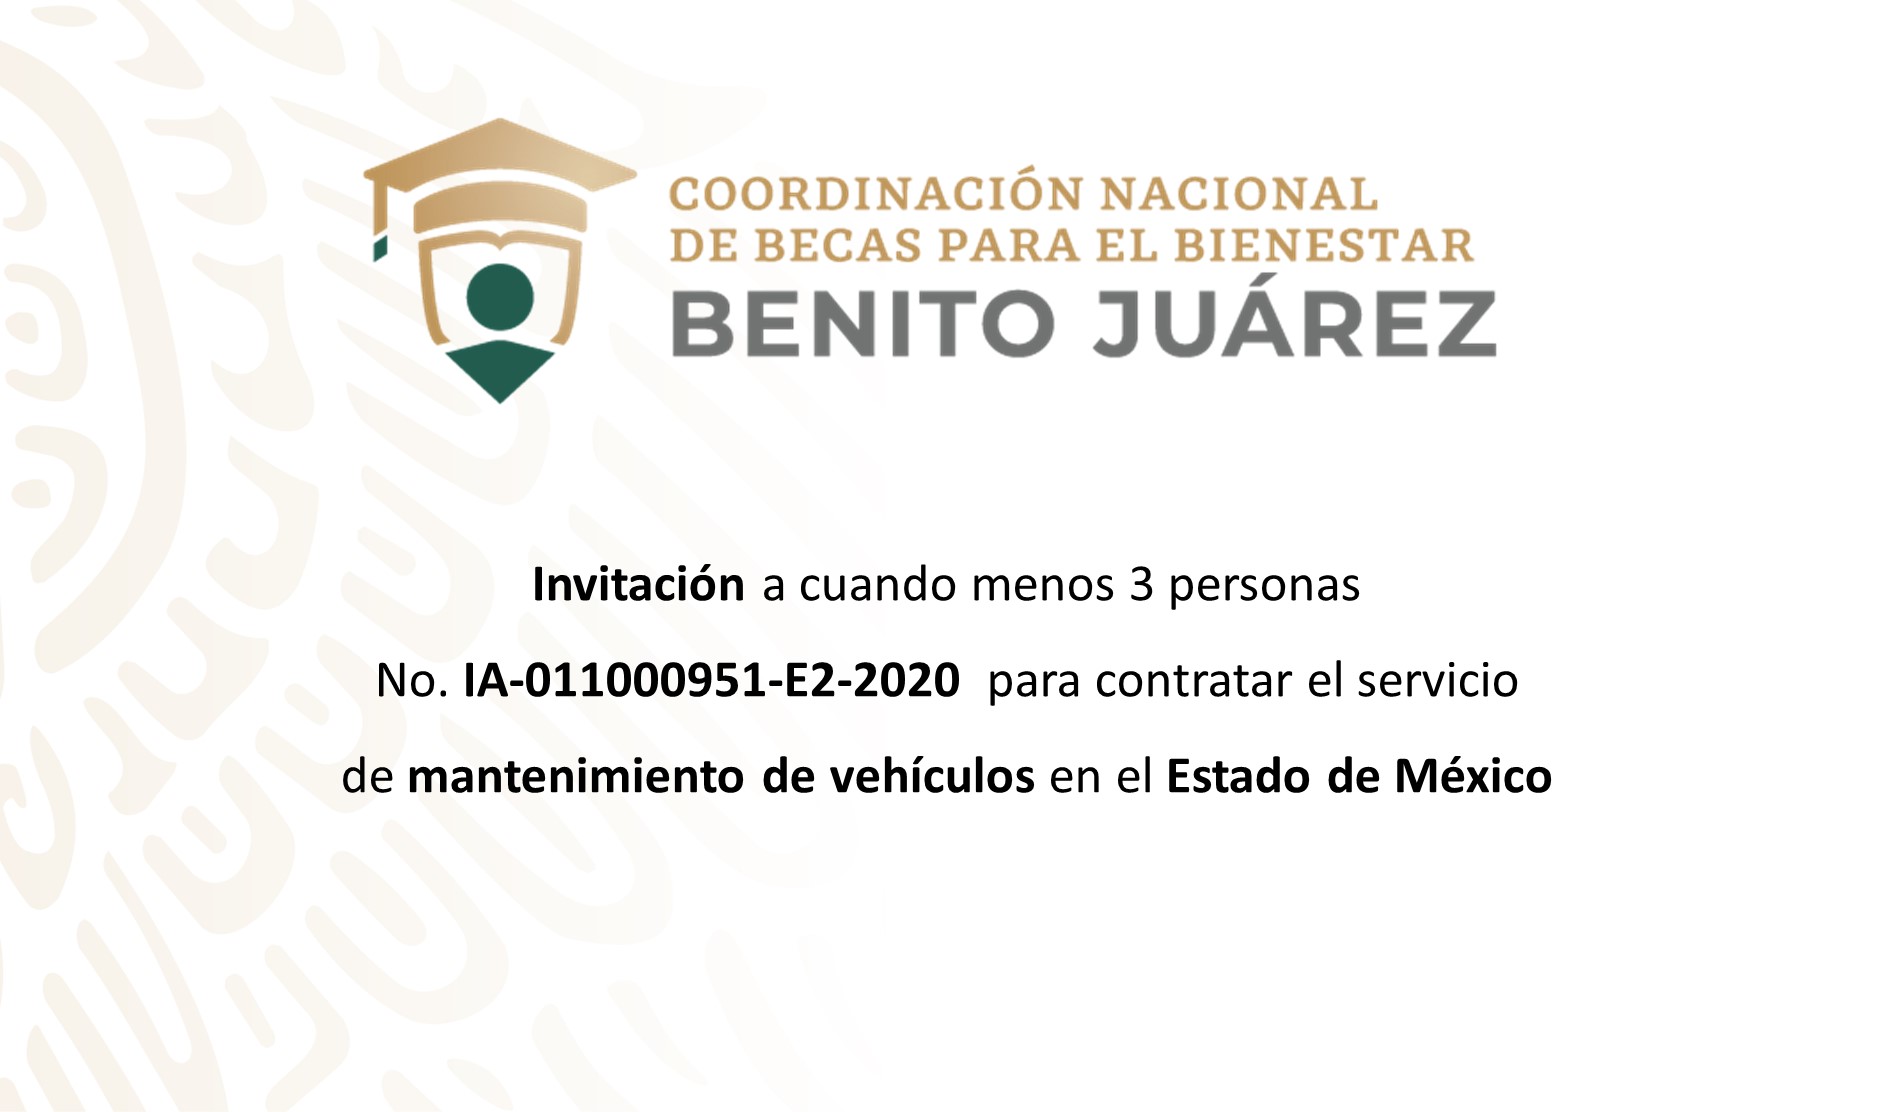 Invitación a cuando menos tres personas  para contratar el servicio de mantenimiento de vehículos en el Estado de México